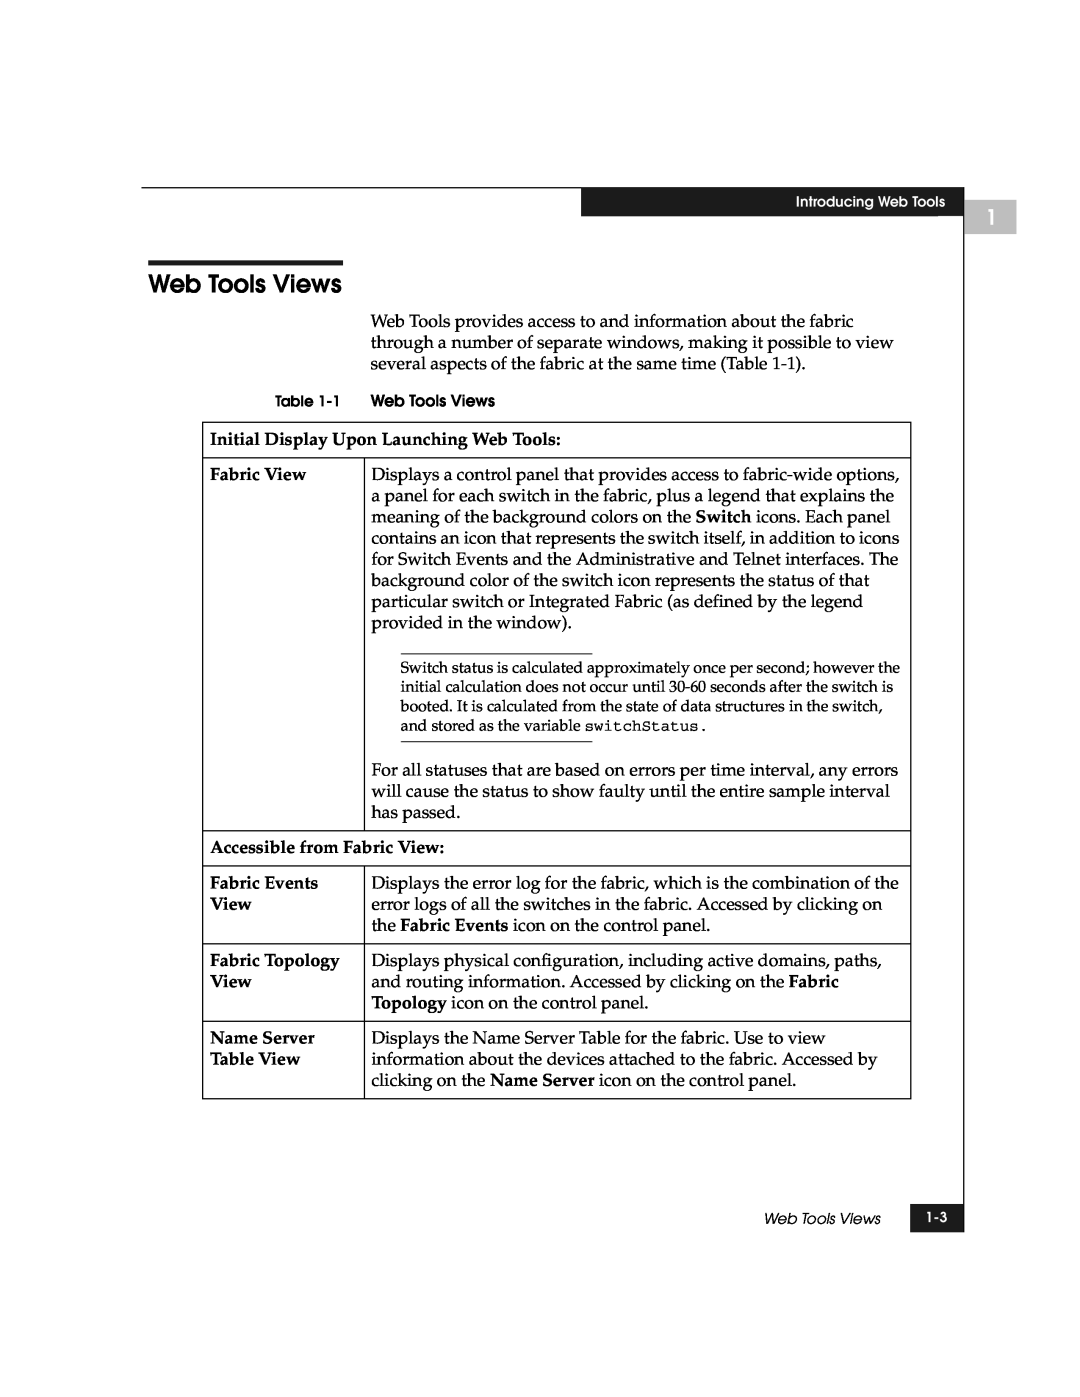 EMC DS-8B manual Web Tools Views 